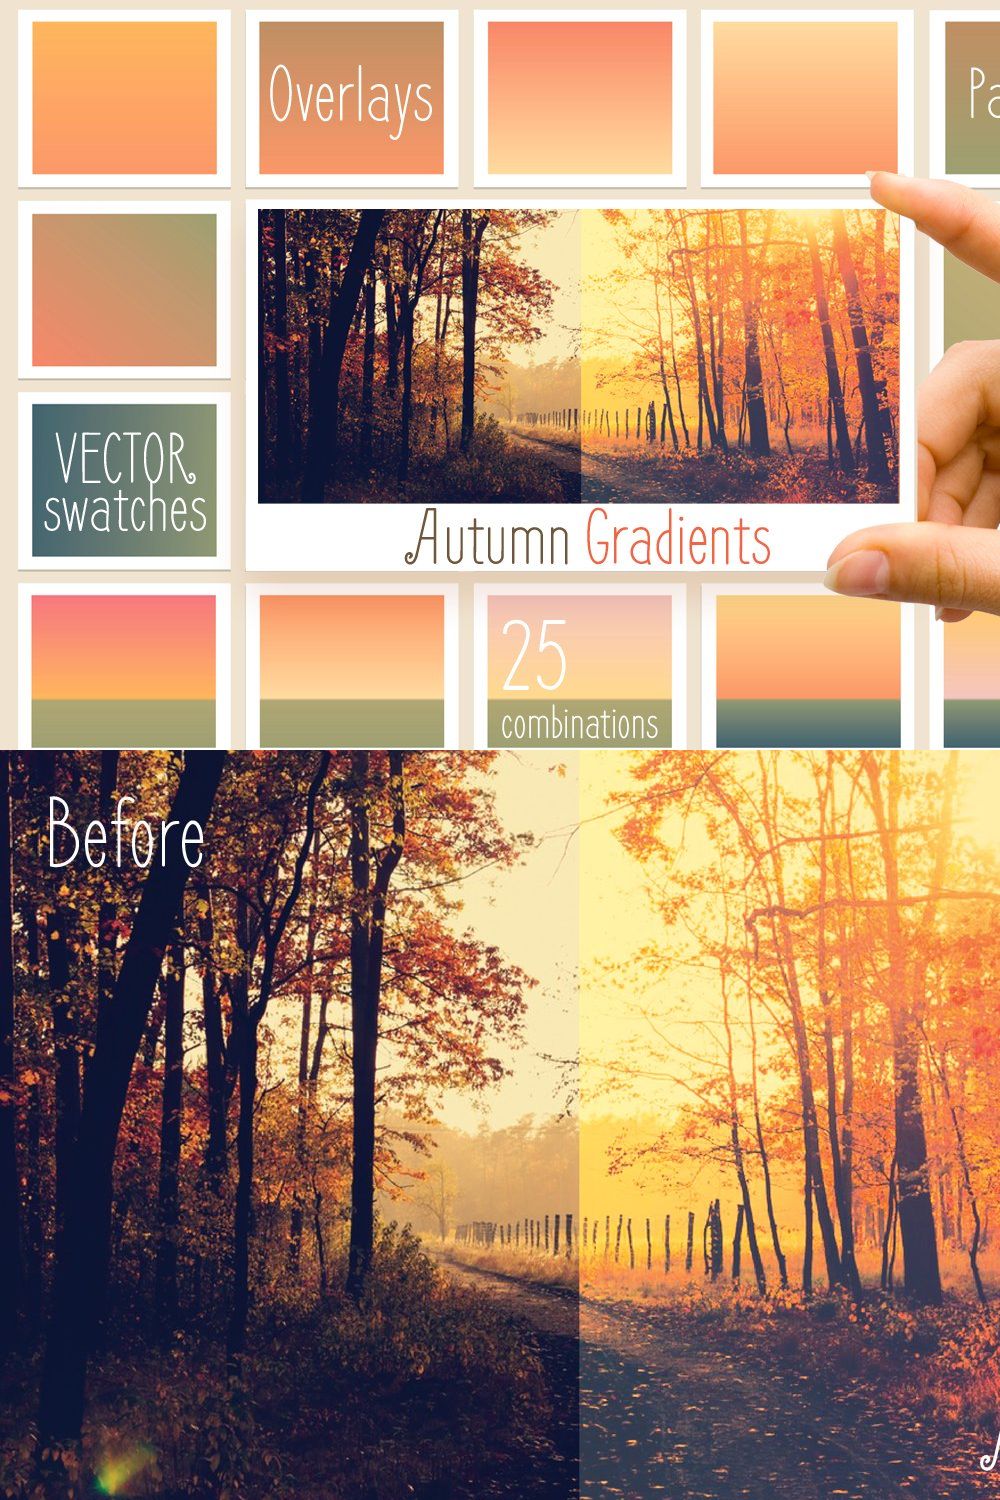 Autumn gradients pinterest preview image.